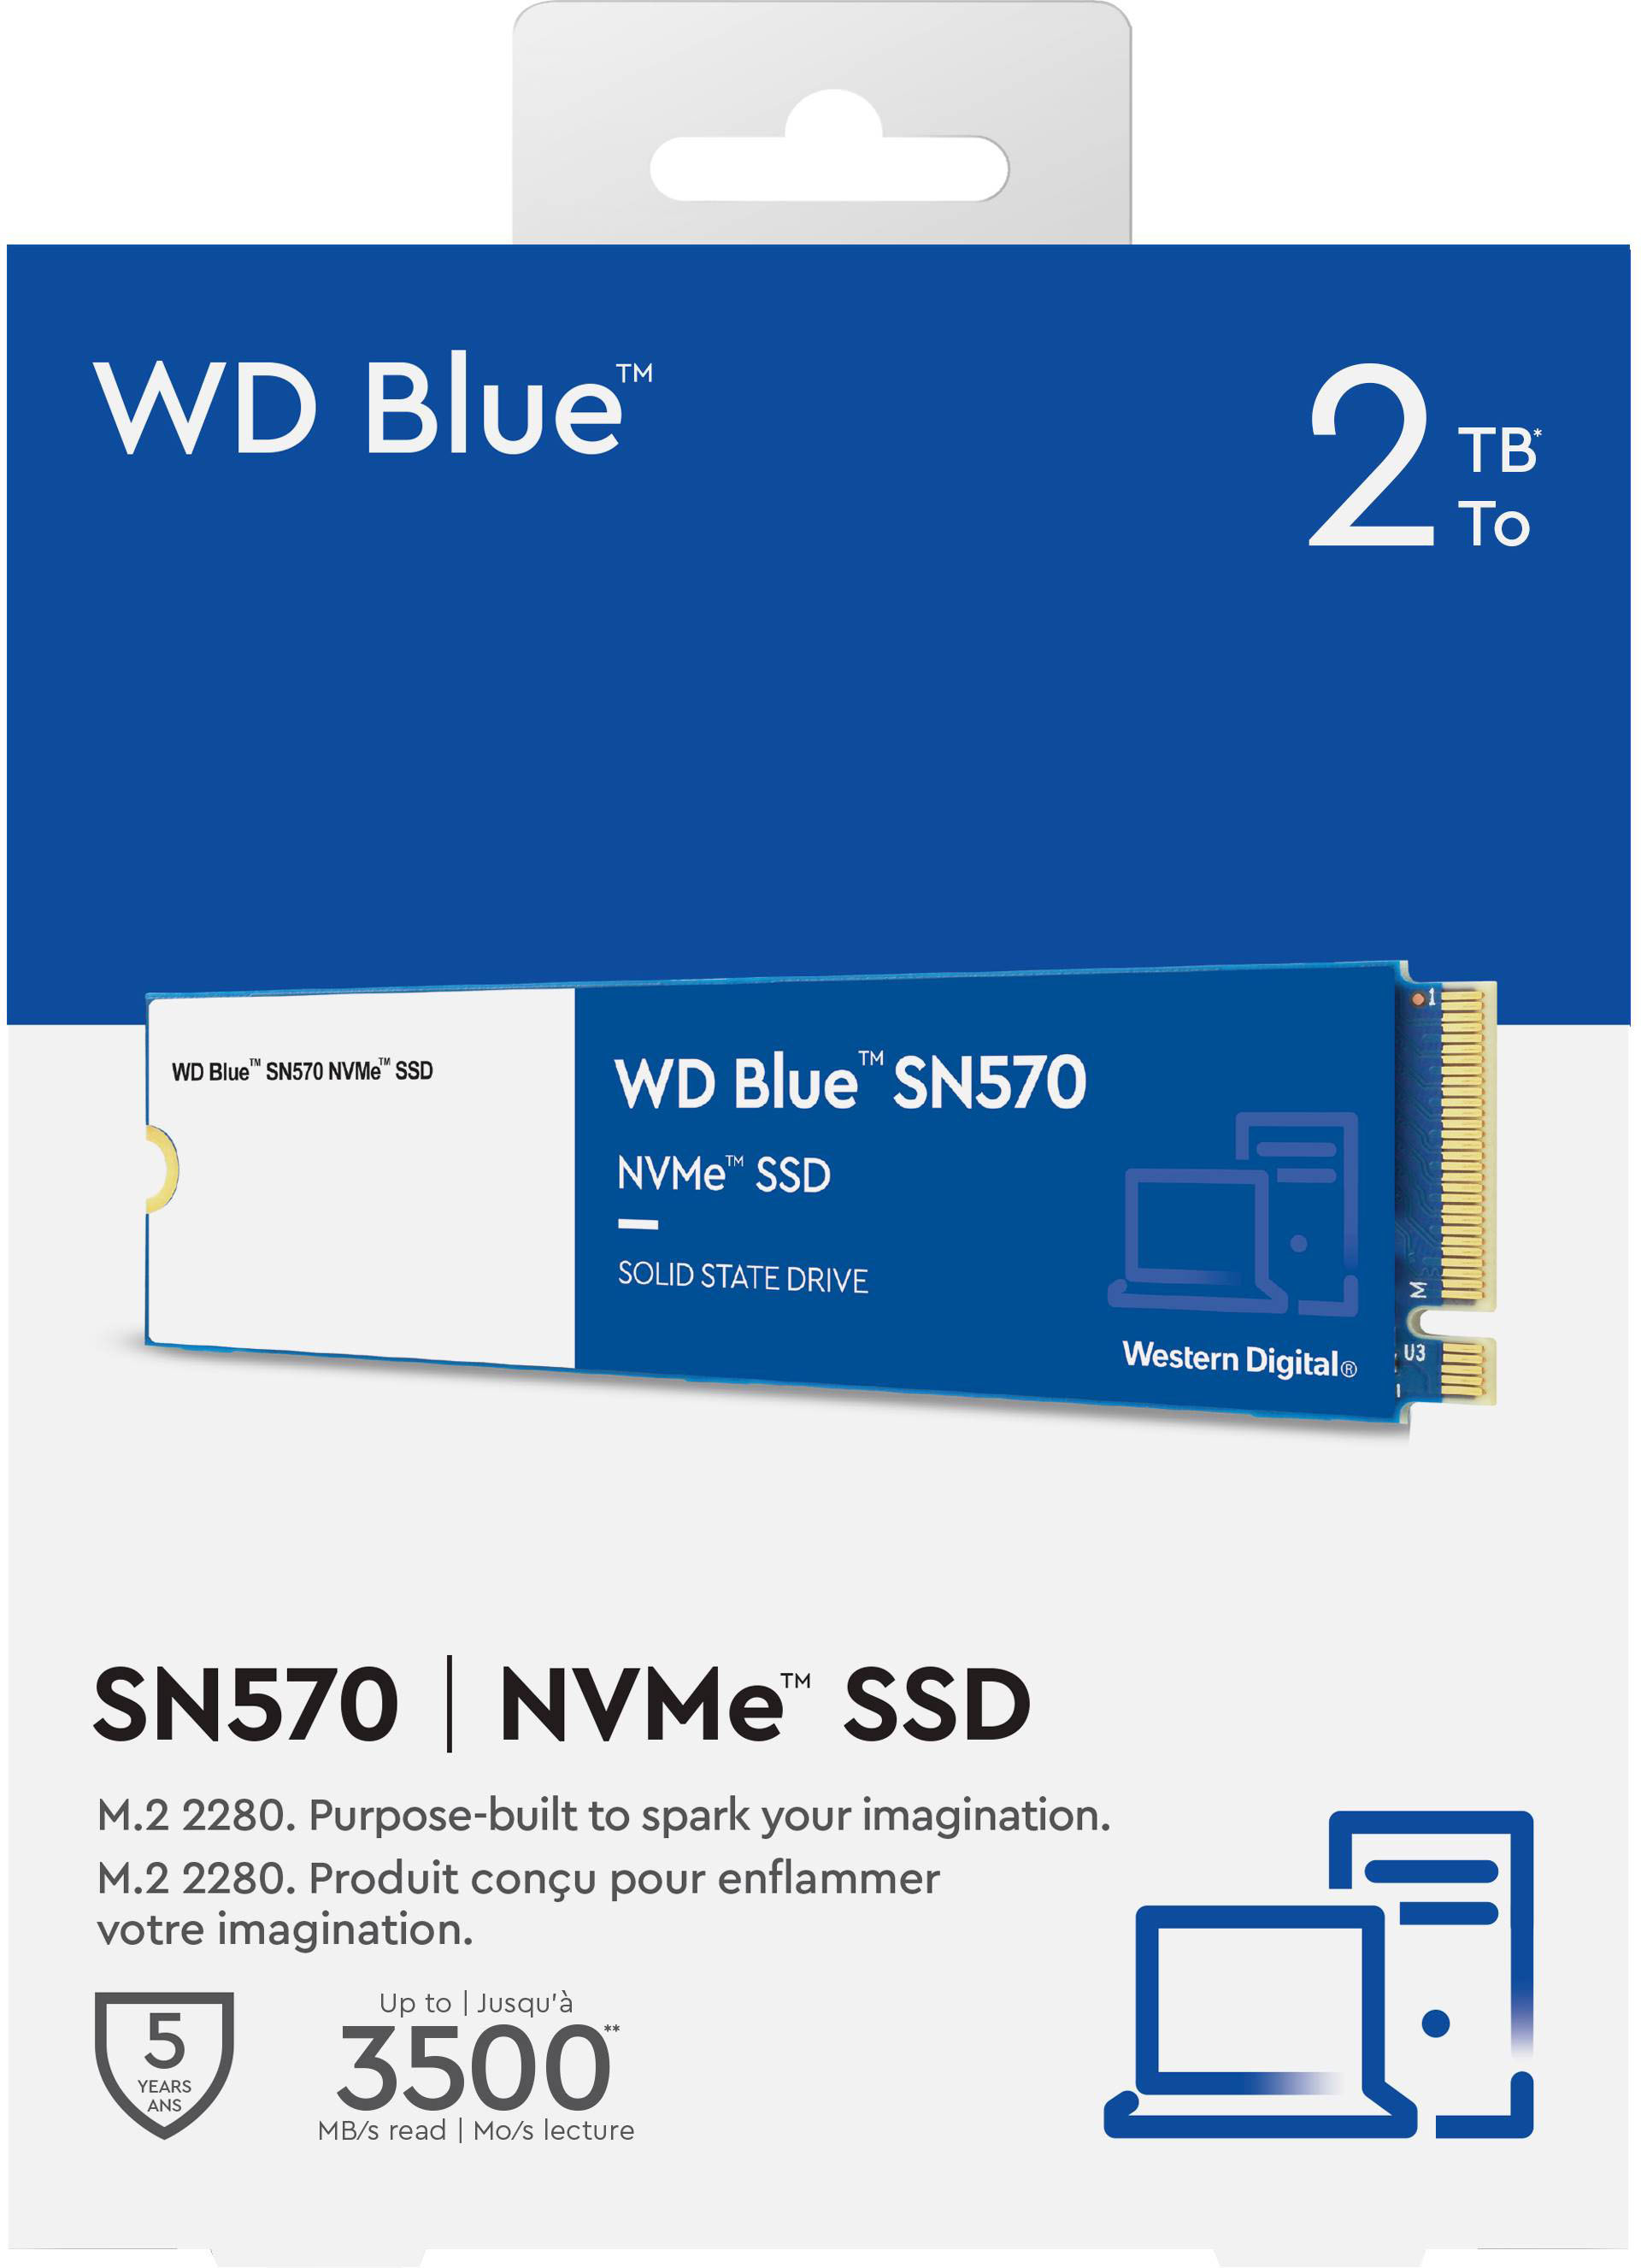 Western Digital SSD WD Blue 2To - SN570 - PCIe Gen3